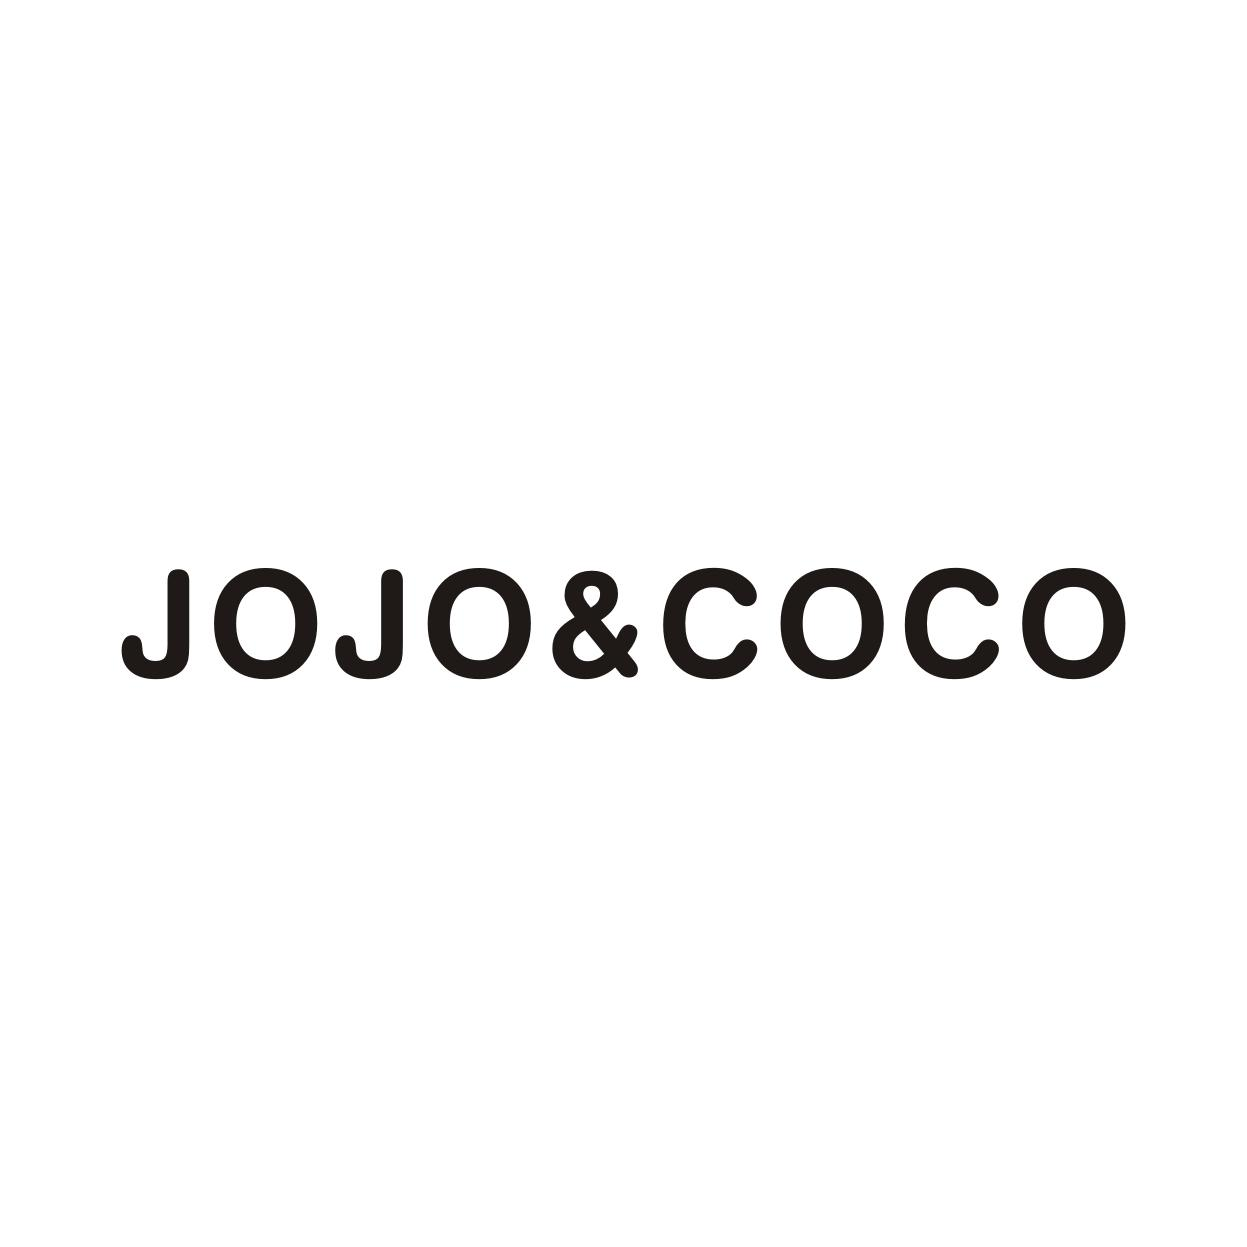 43类-餐饮住宿JOJO&COCO商标转让